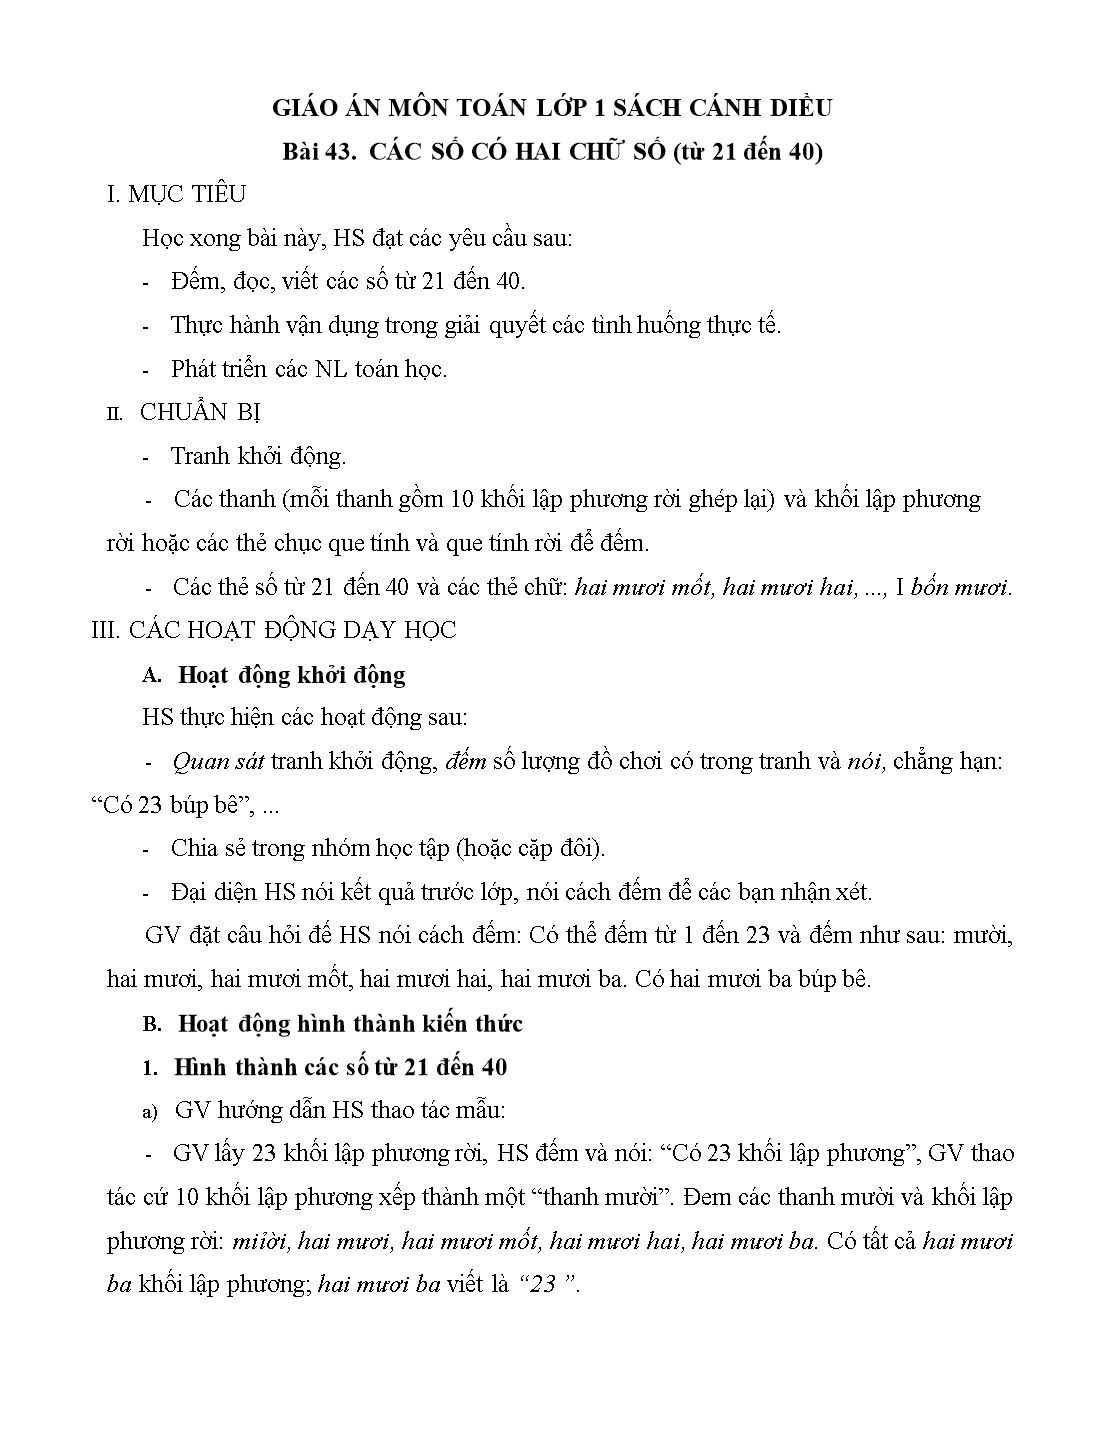 Giáo án môn Toán Lớp 1 (Cánh diều) - Bài 43: Các số có hai chữ số (Từ 21 đến 40) trang 1